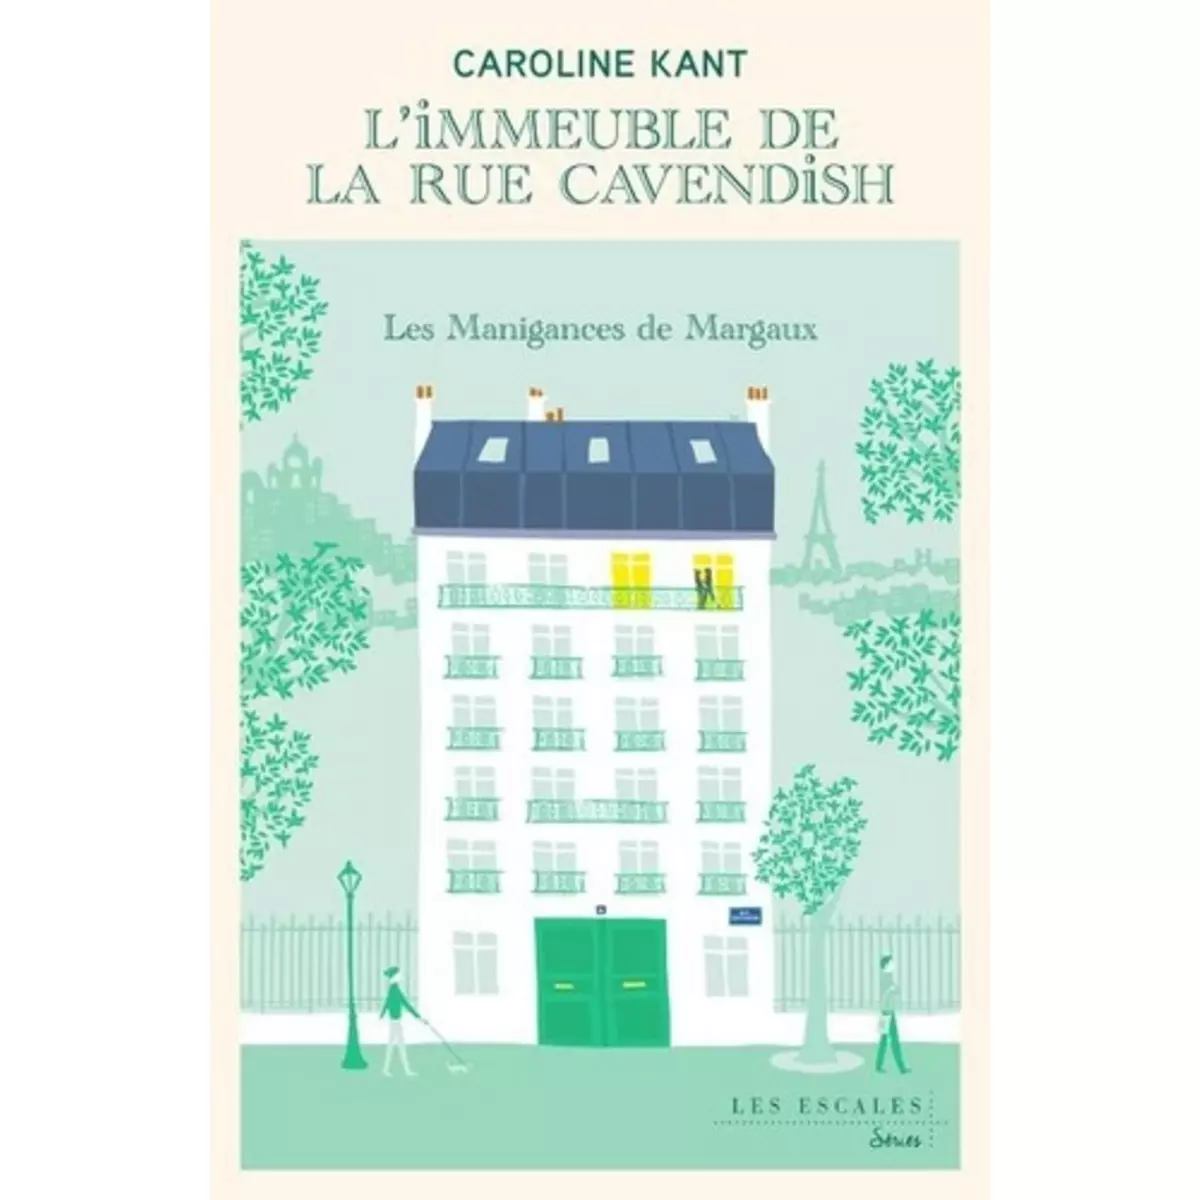  L'IMMEUBLE DE LA RUE CAVENDISH TOME 1 : LES MANIGANCES DE MARGAUX, Kant Caroline